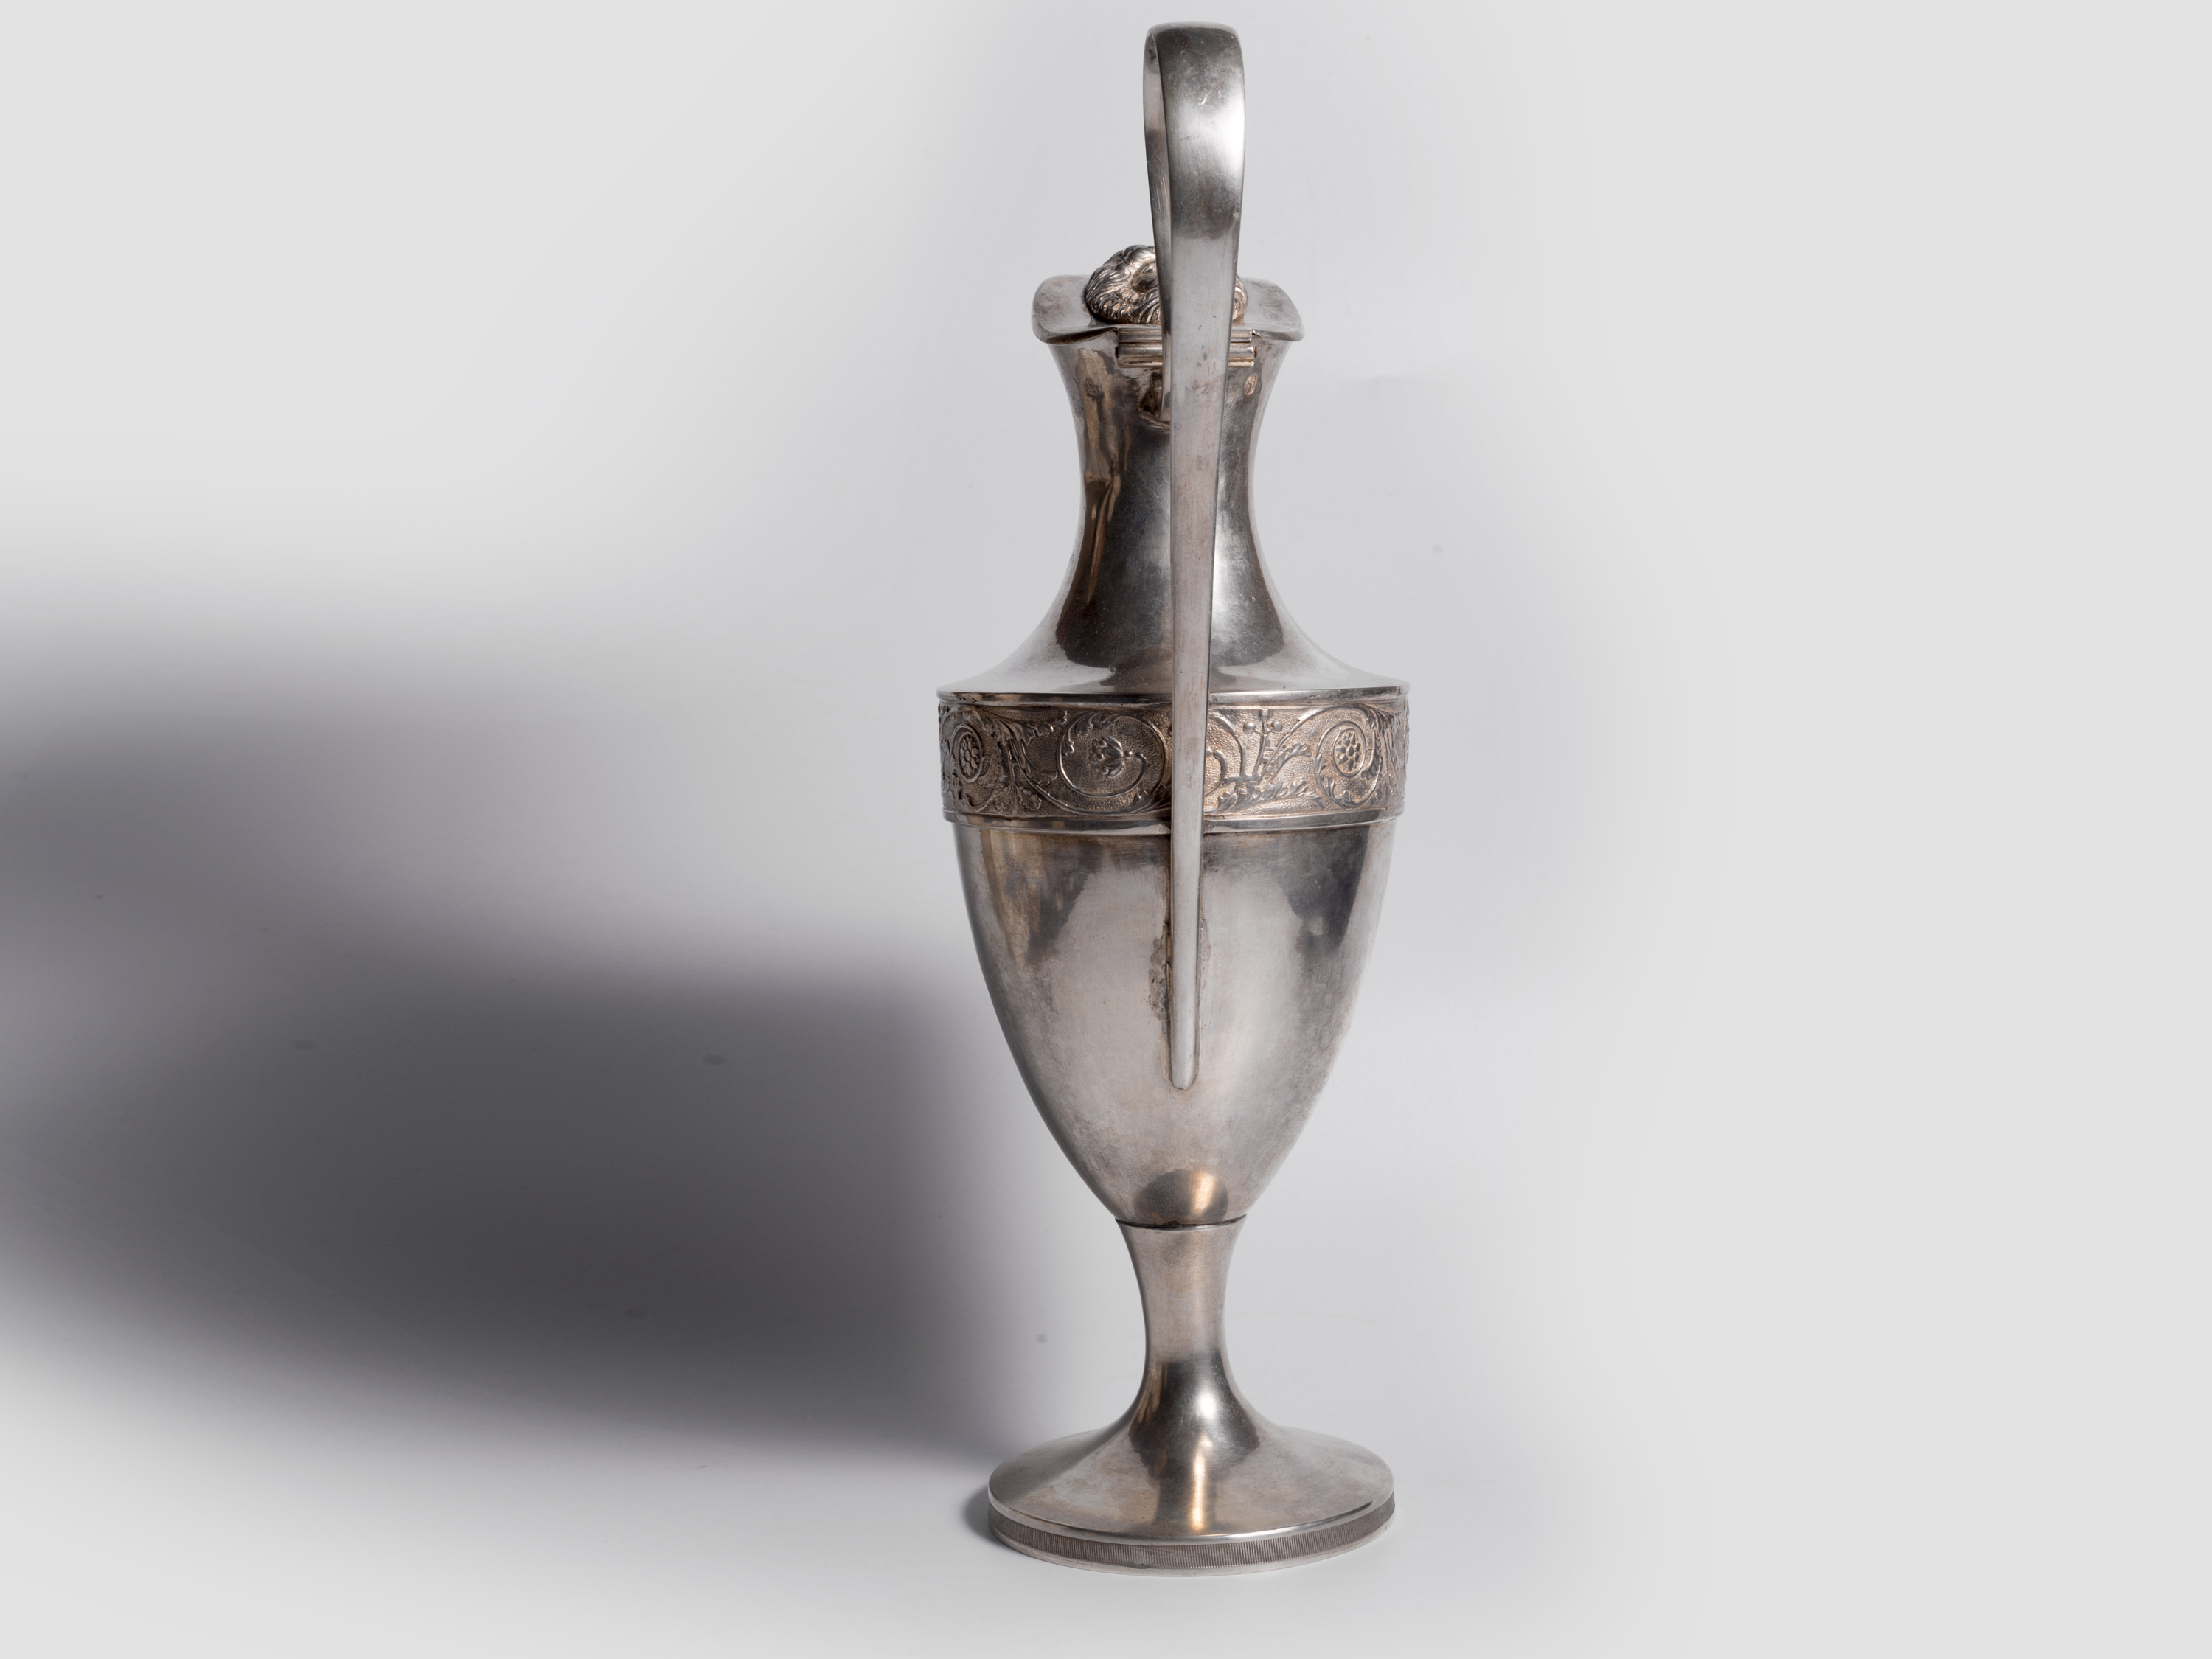 Silver Jug 1806, Empire silver jug, Silver cast & engraved - Image 4 of 6